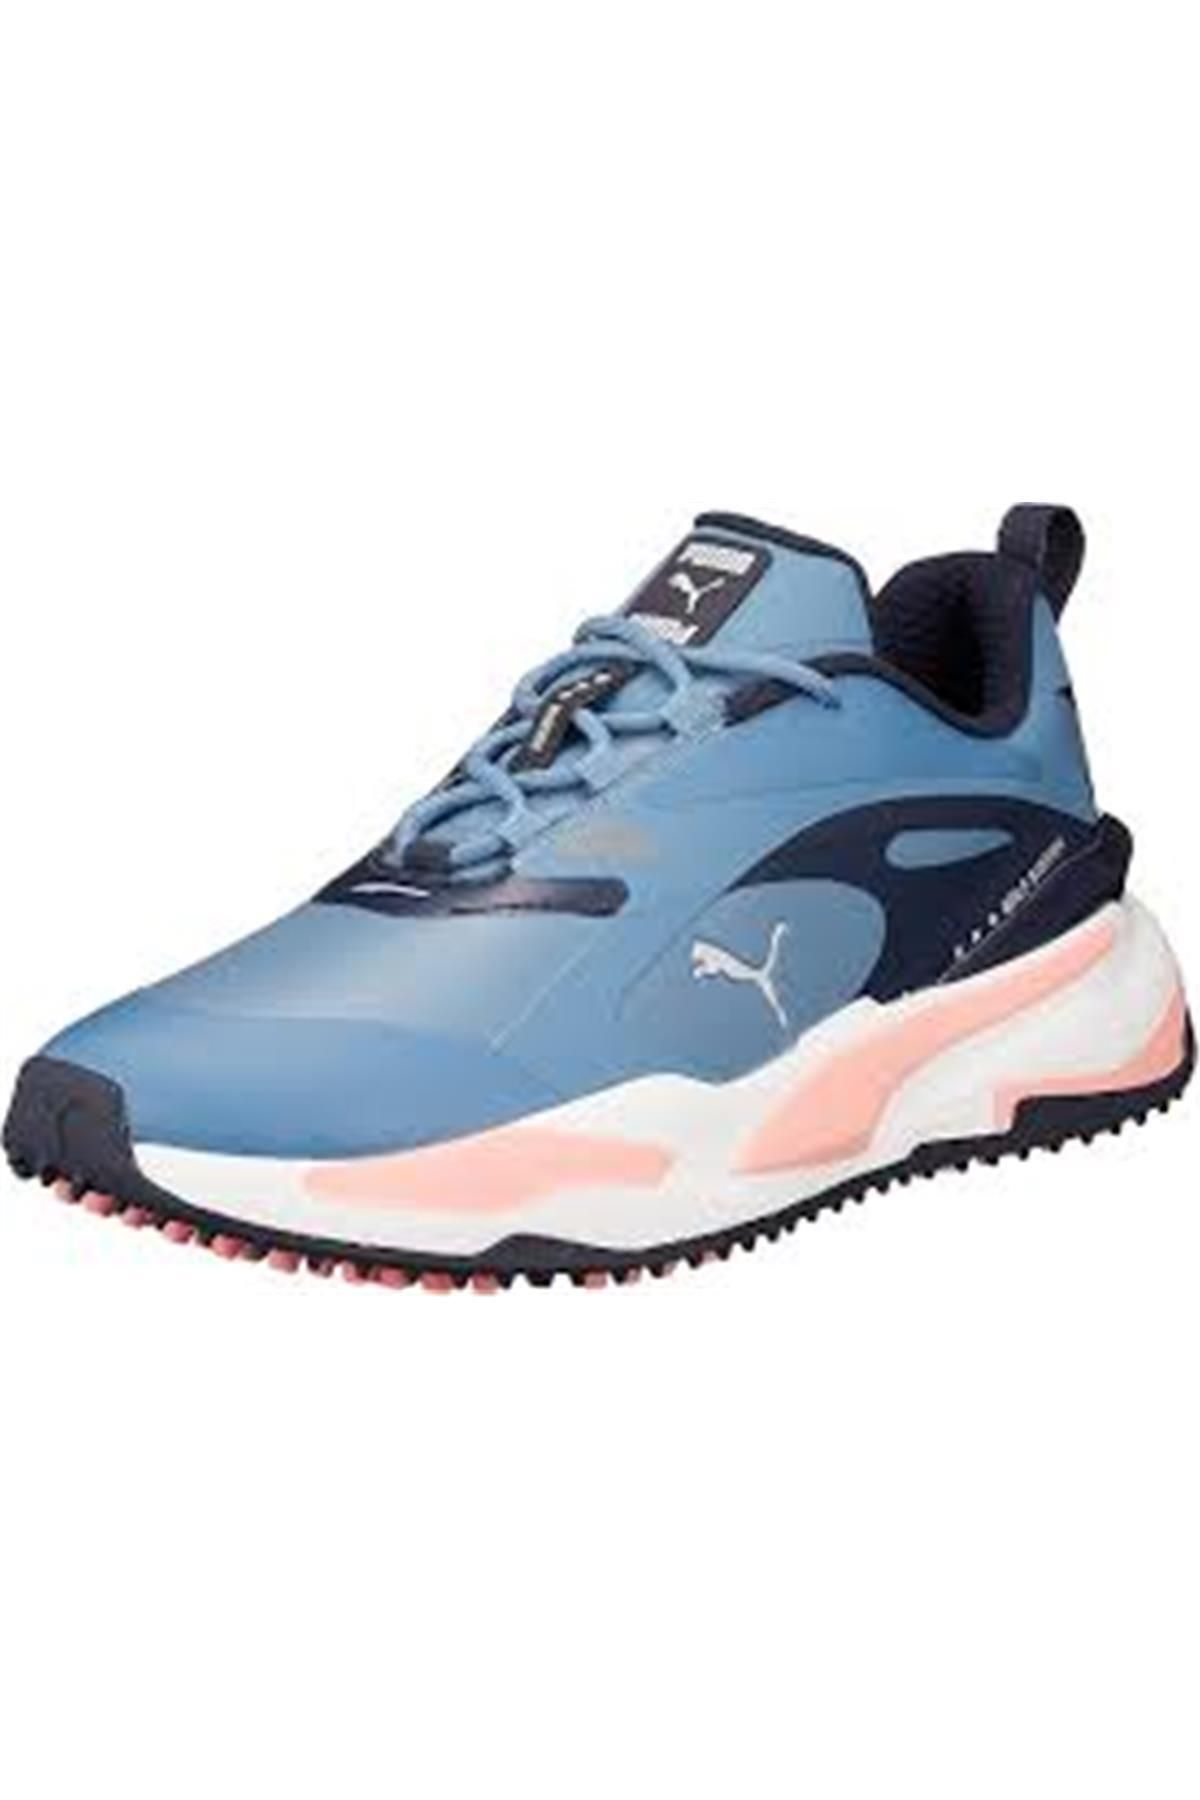 Puma GS-Fast Shoes - Erkek Golf Ayakkabısı